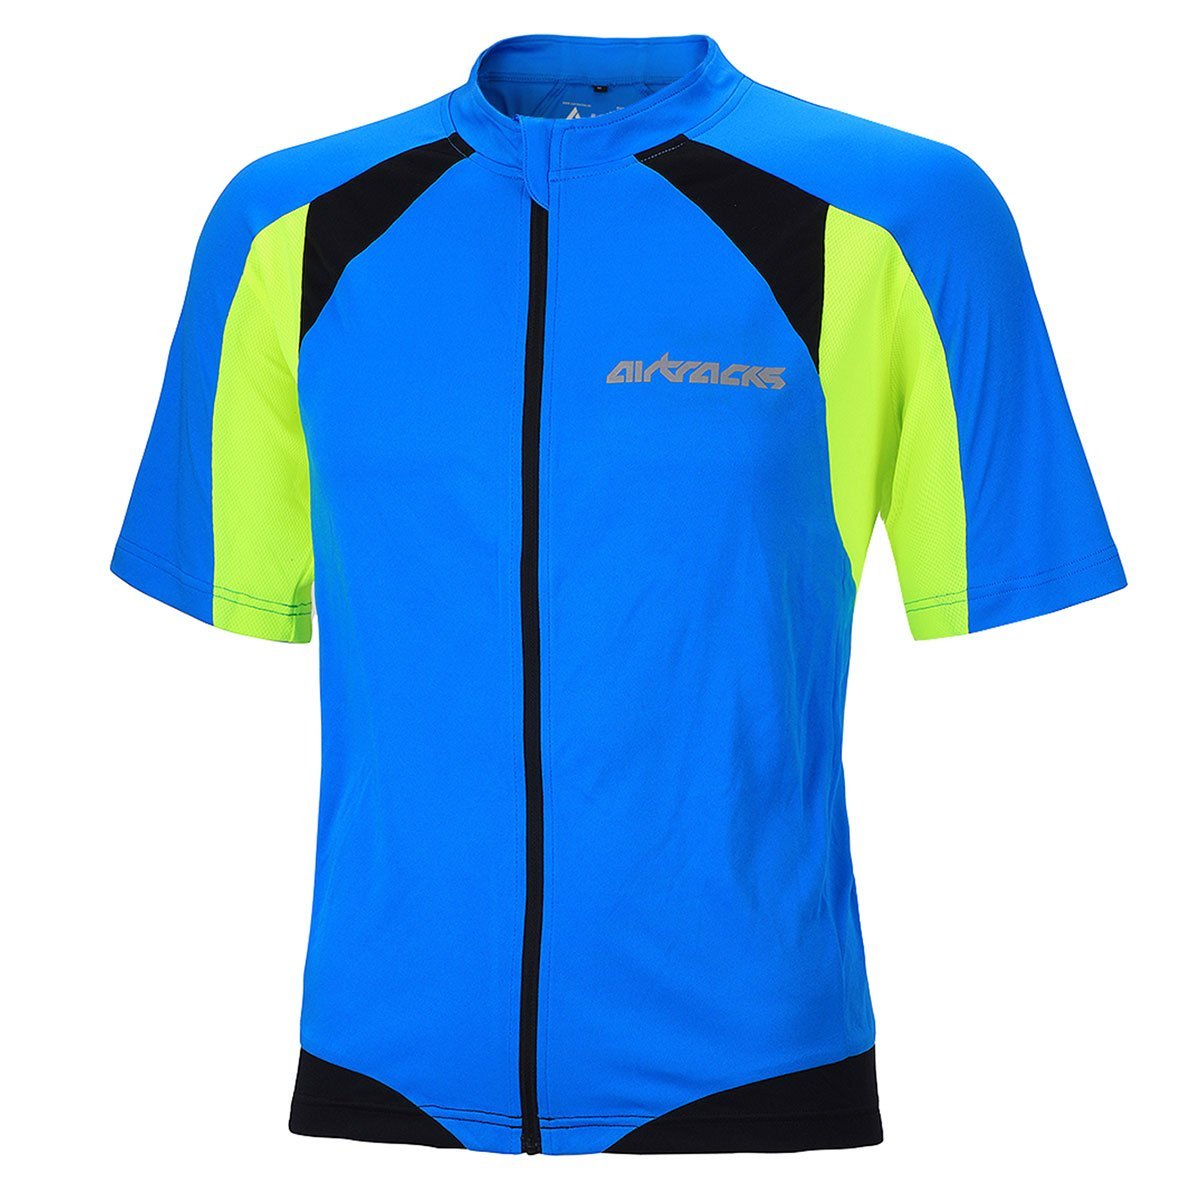 Airtracks Herren Fahrradtrikot Kurzarm PRO T Radtrikot Jersey Bike Radler Shirt Atmungsaktiv Schnelltrocknend Reflektierend Größen XS S M XL XXL XXXL XXXXL - blau-neon - M